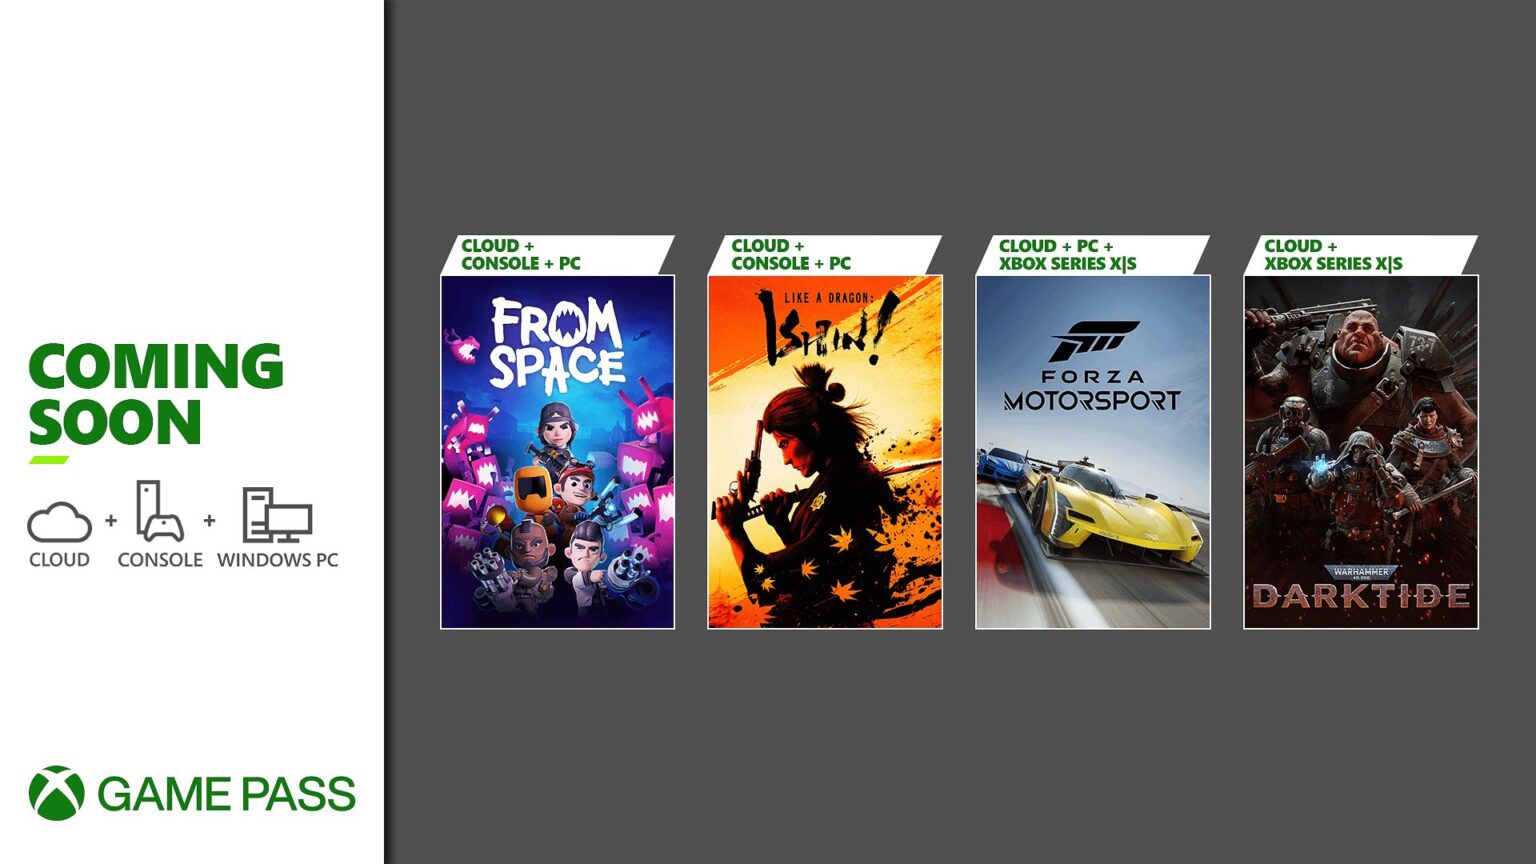 Xbox Game Pass novembro de 2021: 7 primeiros jogos listados, incluindo GTA  e Forza - Windows Club